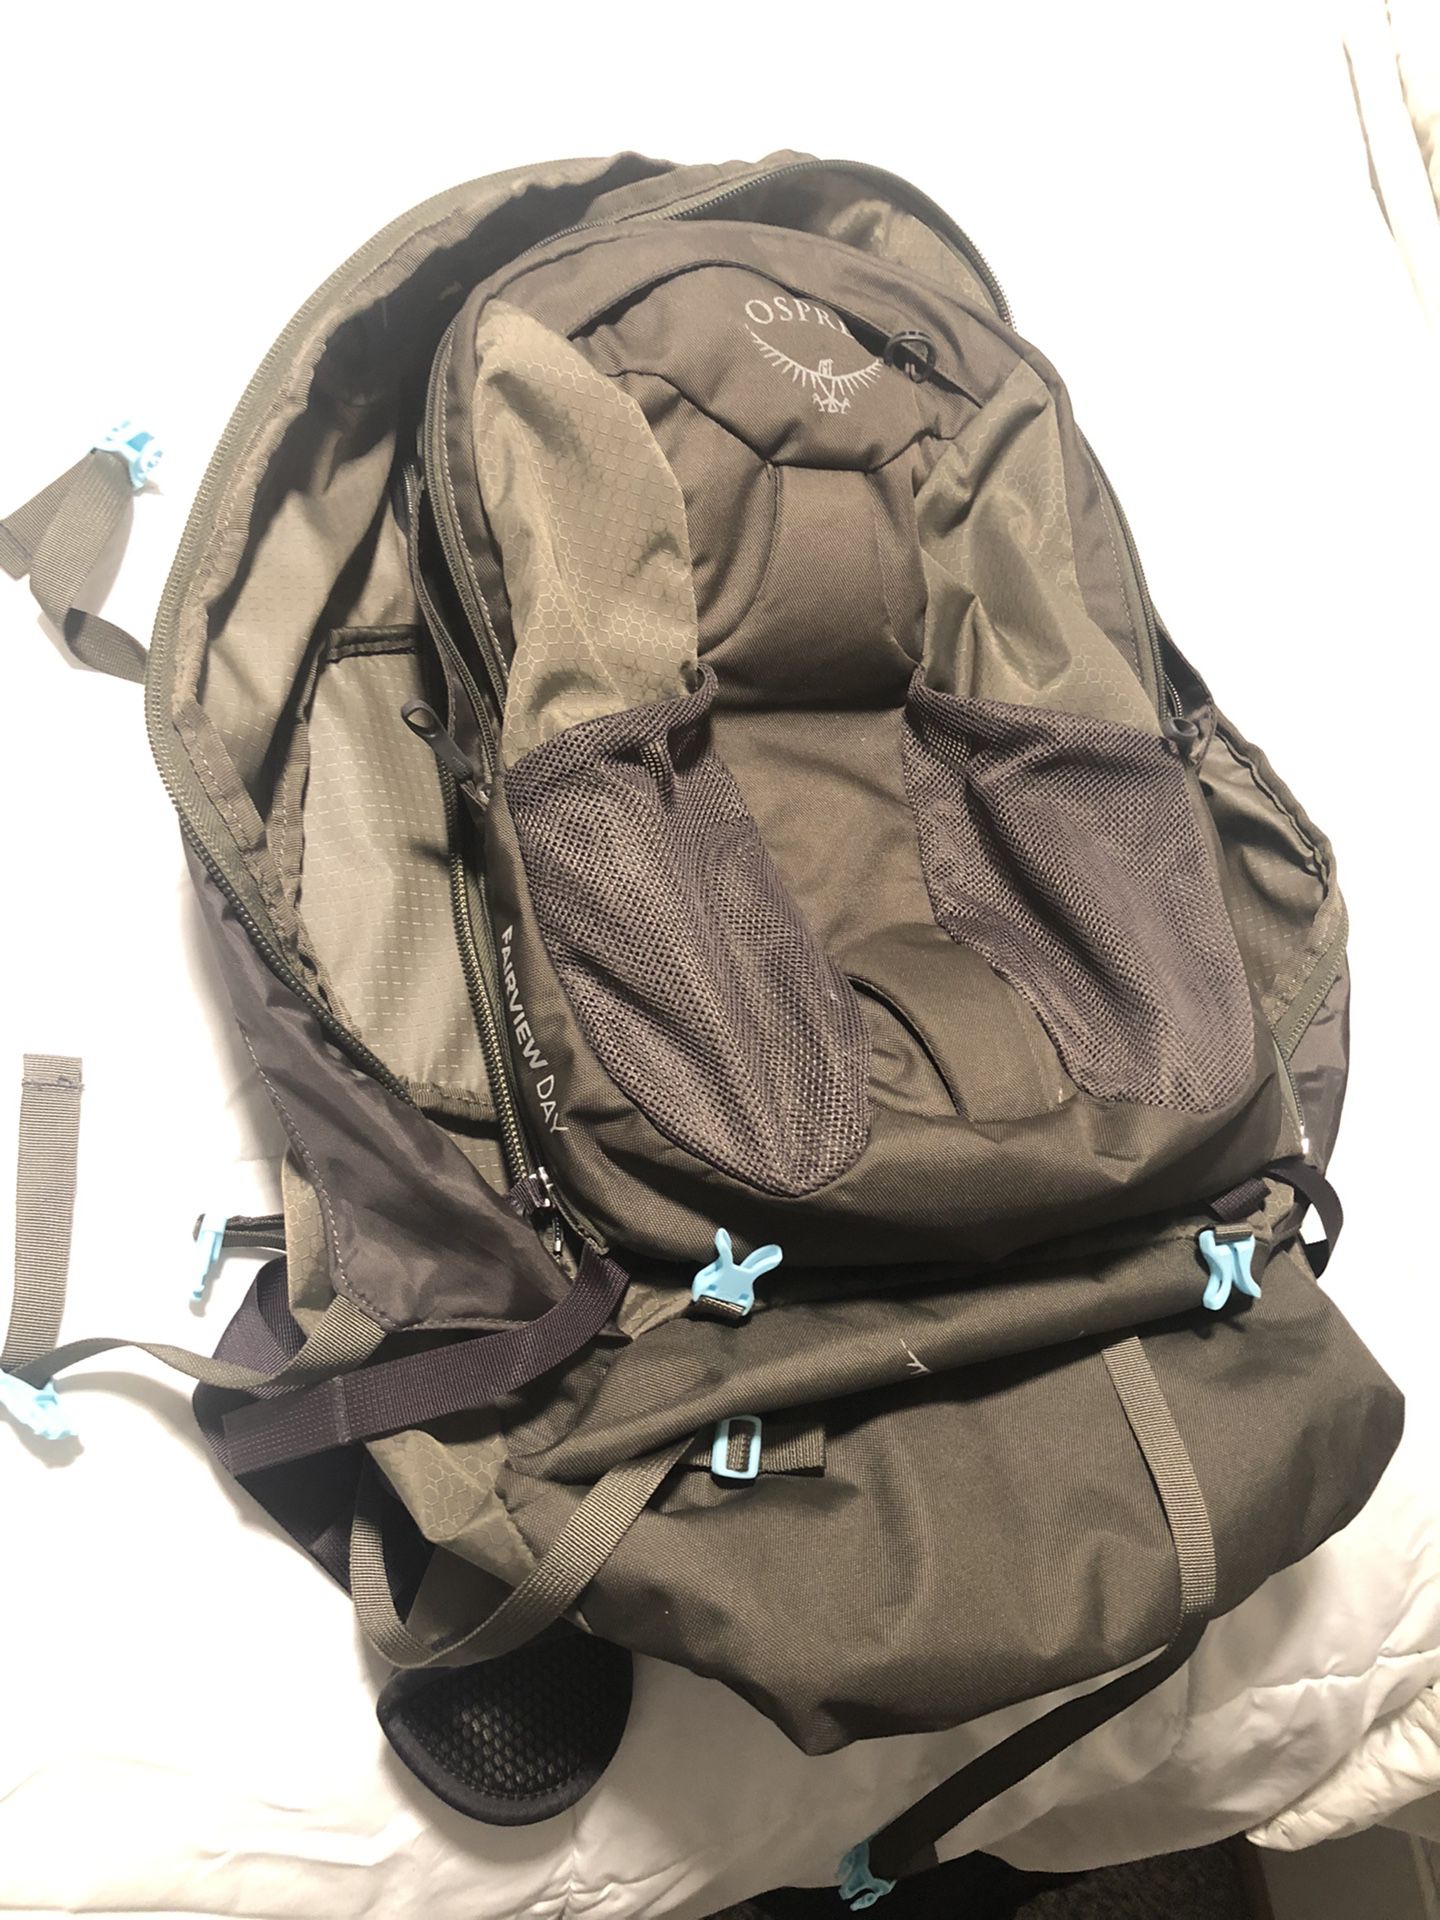 Osprey Fairview 55 Travel Backpack - Women's S/M